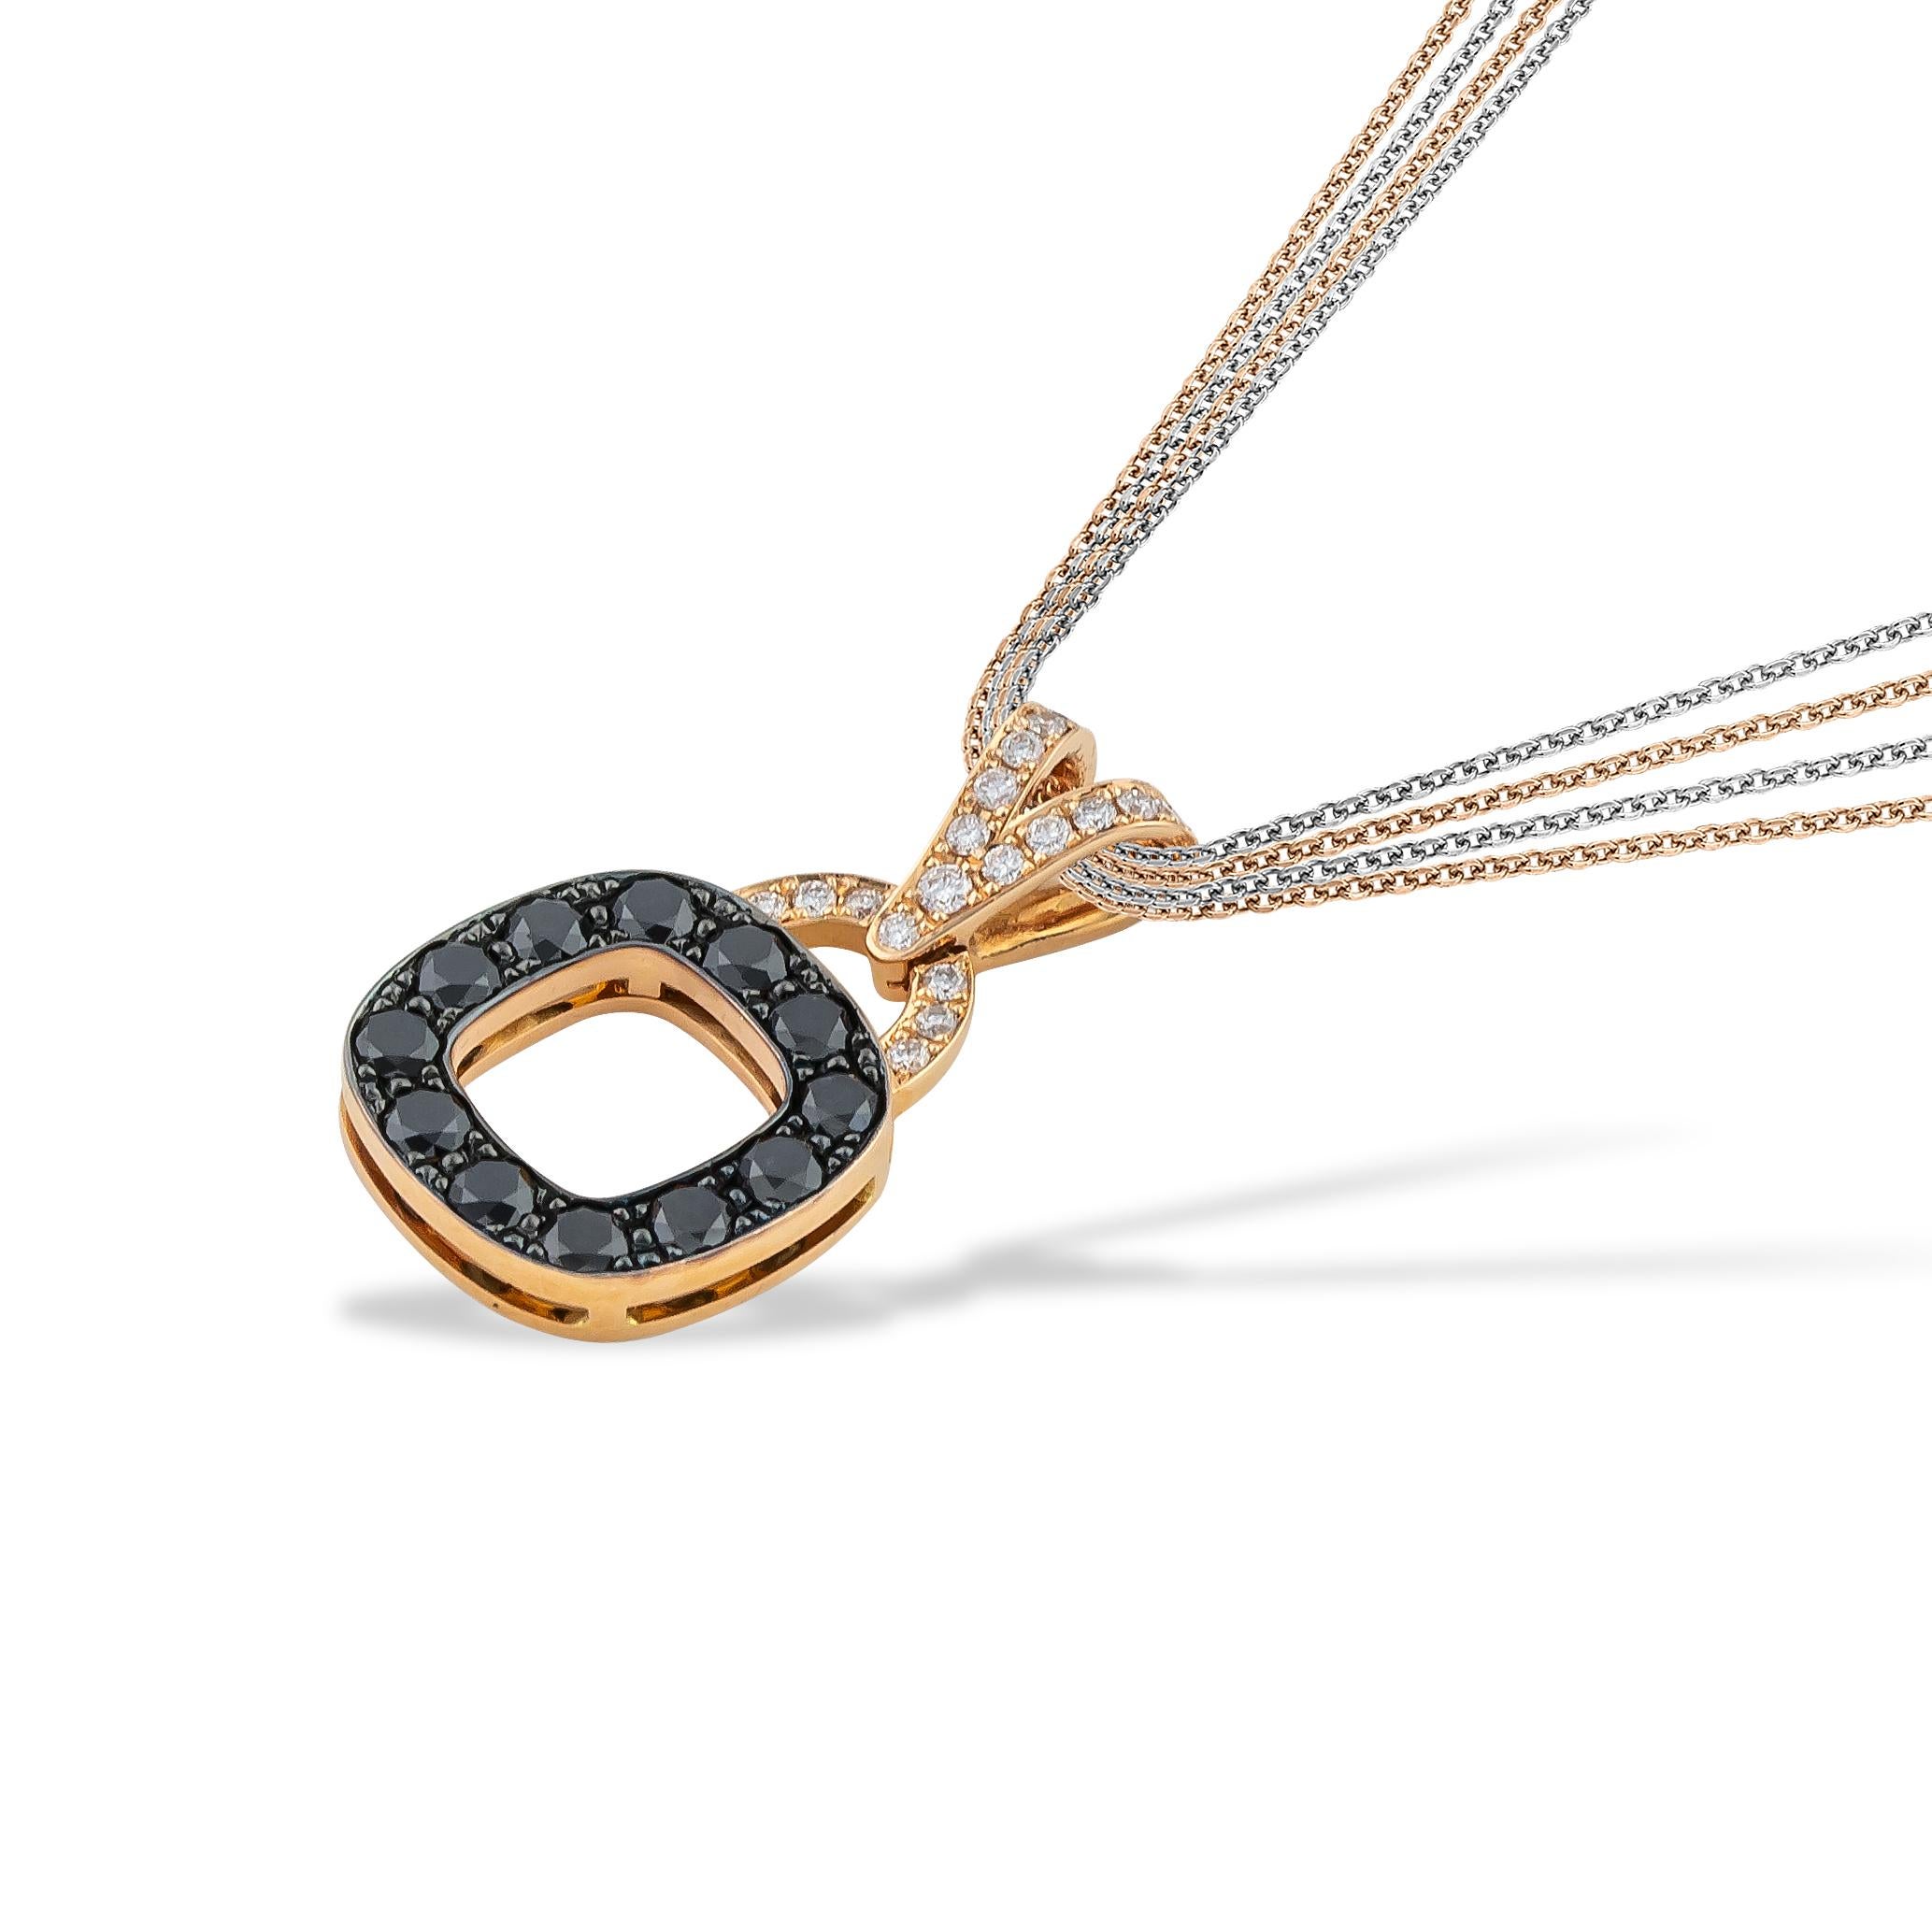 Abgerundete quadratische Halskette mit schwarzen und weißen Pave-Diamanten aus 18-karätigem Roségold. Dieses diamantene Meisterwerk wird mit einer Multikette geliefert (2x Roségold und 2x Weißgold mit Diamantschliff). Diese Halskette gehört zur